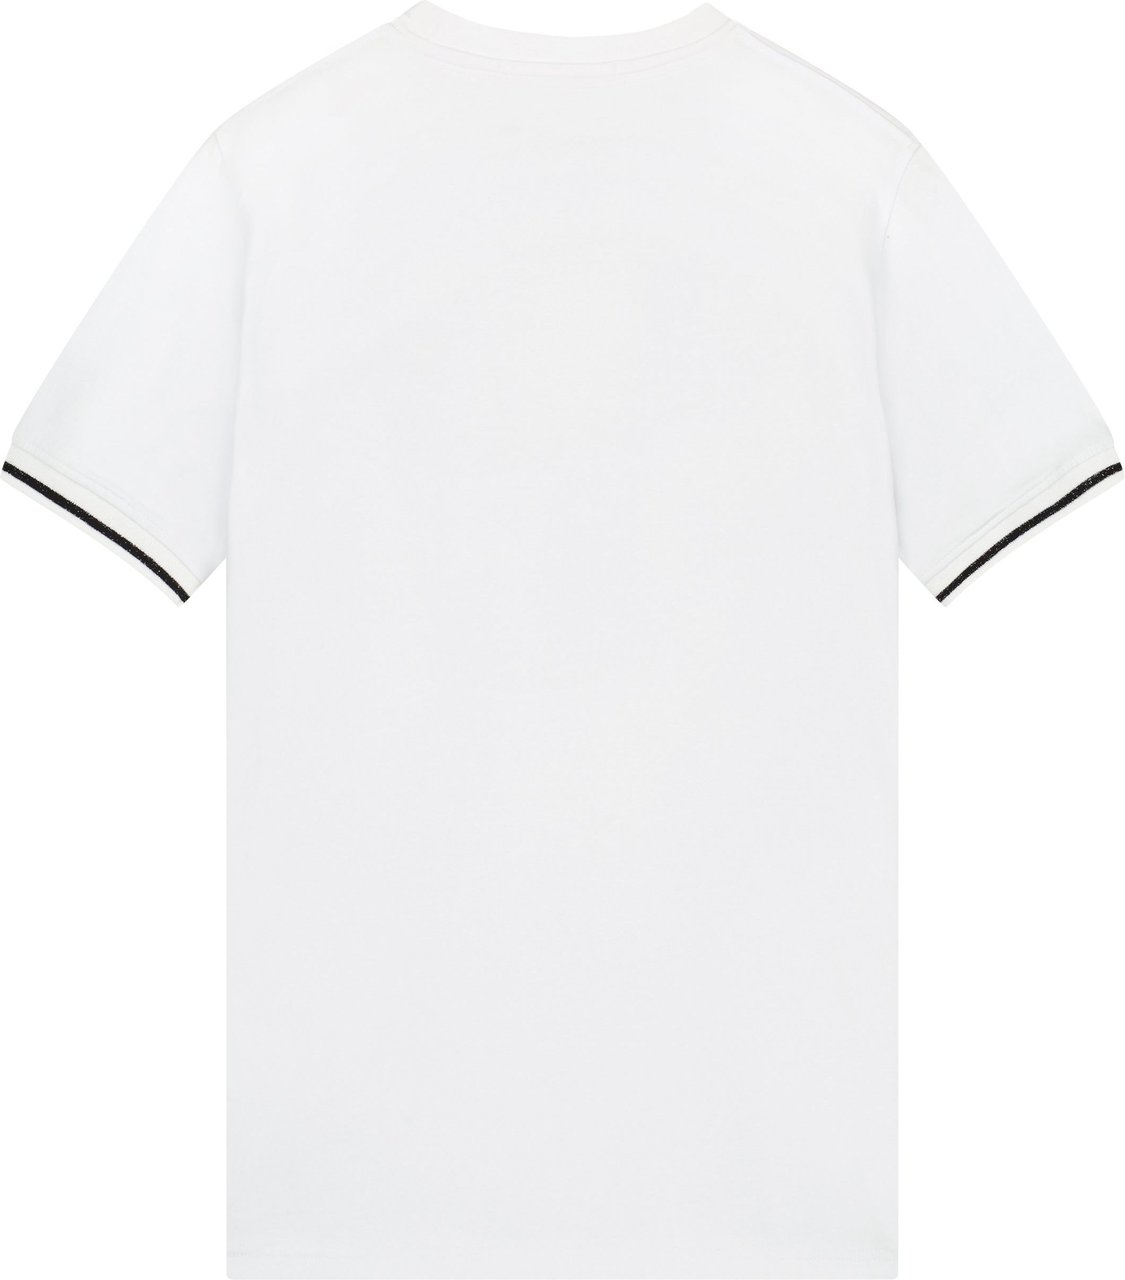 Malelions Striped T-Shirt - White/Black White